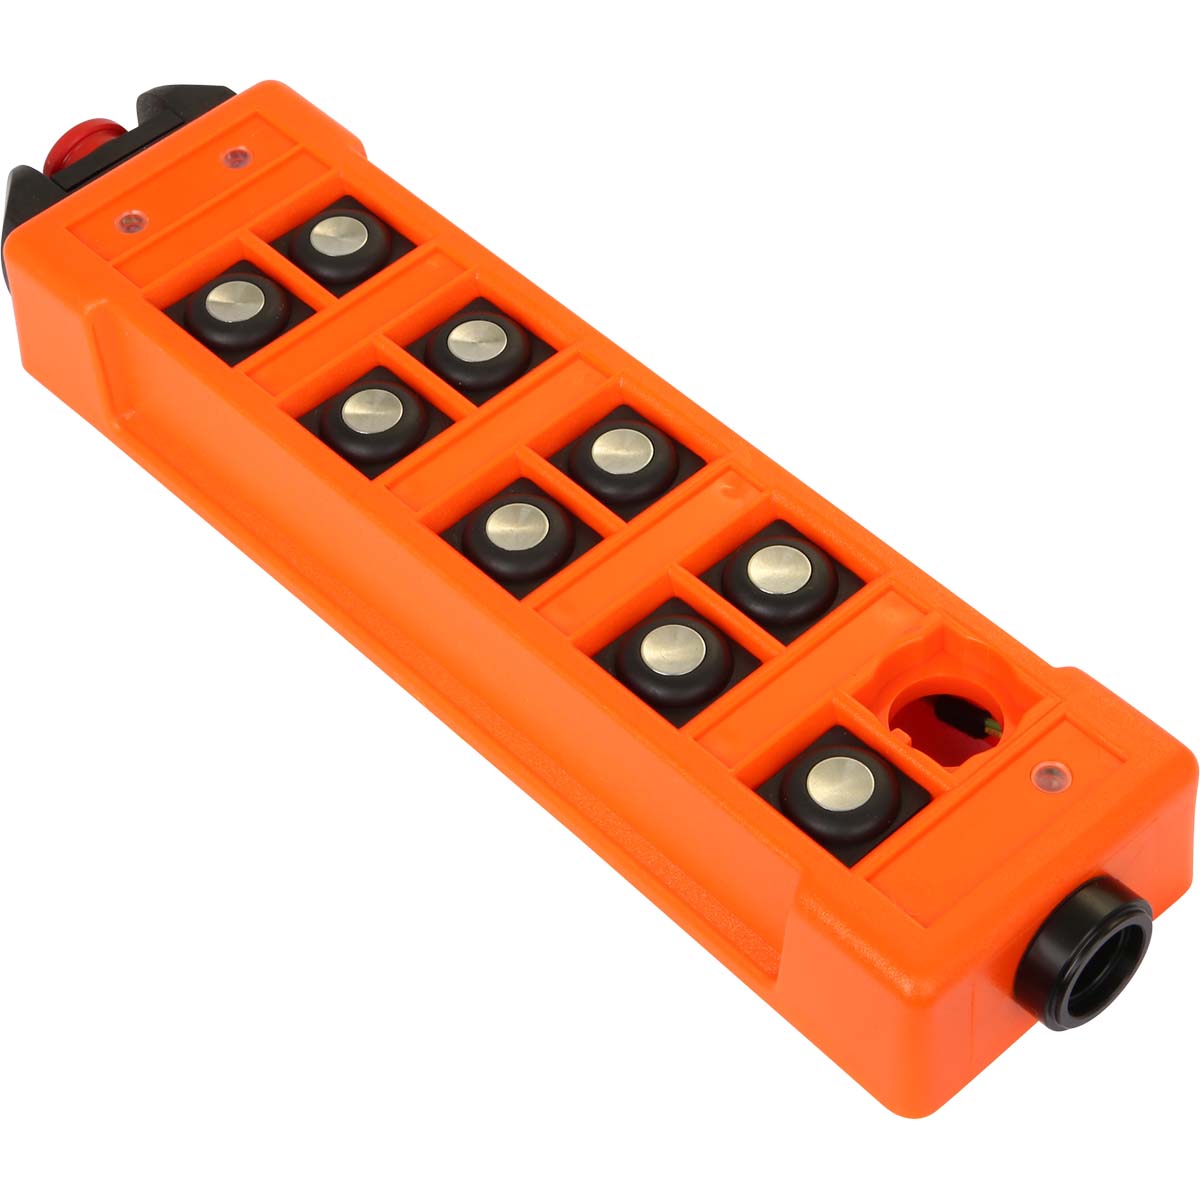 Sendergehäuse Oberteil micron 5, orange, für Dreh- schalter, mit 9 Betätiger, Stop-Schalter, radiomatic<sup>®</sup> iON